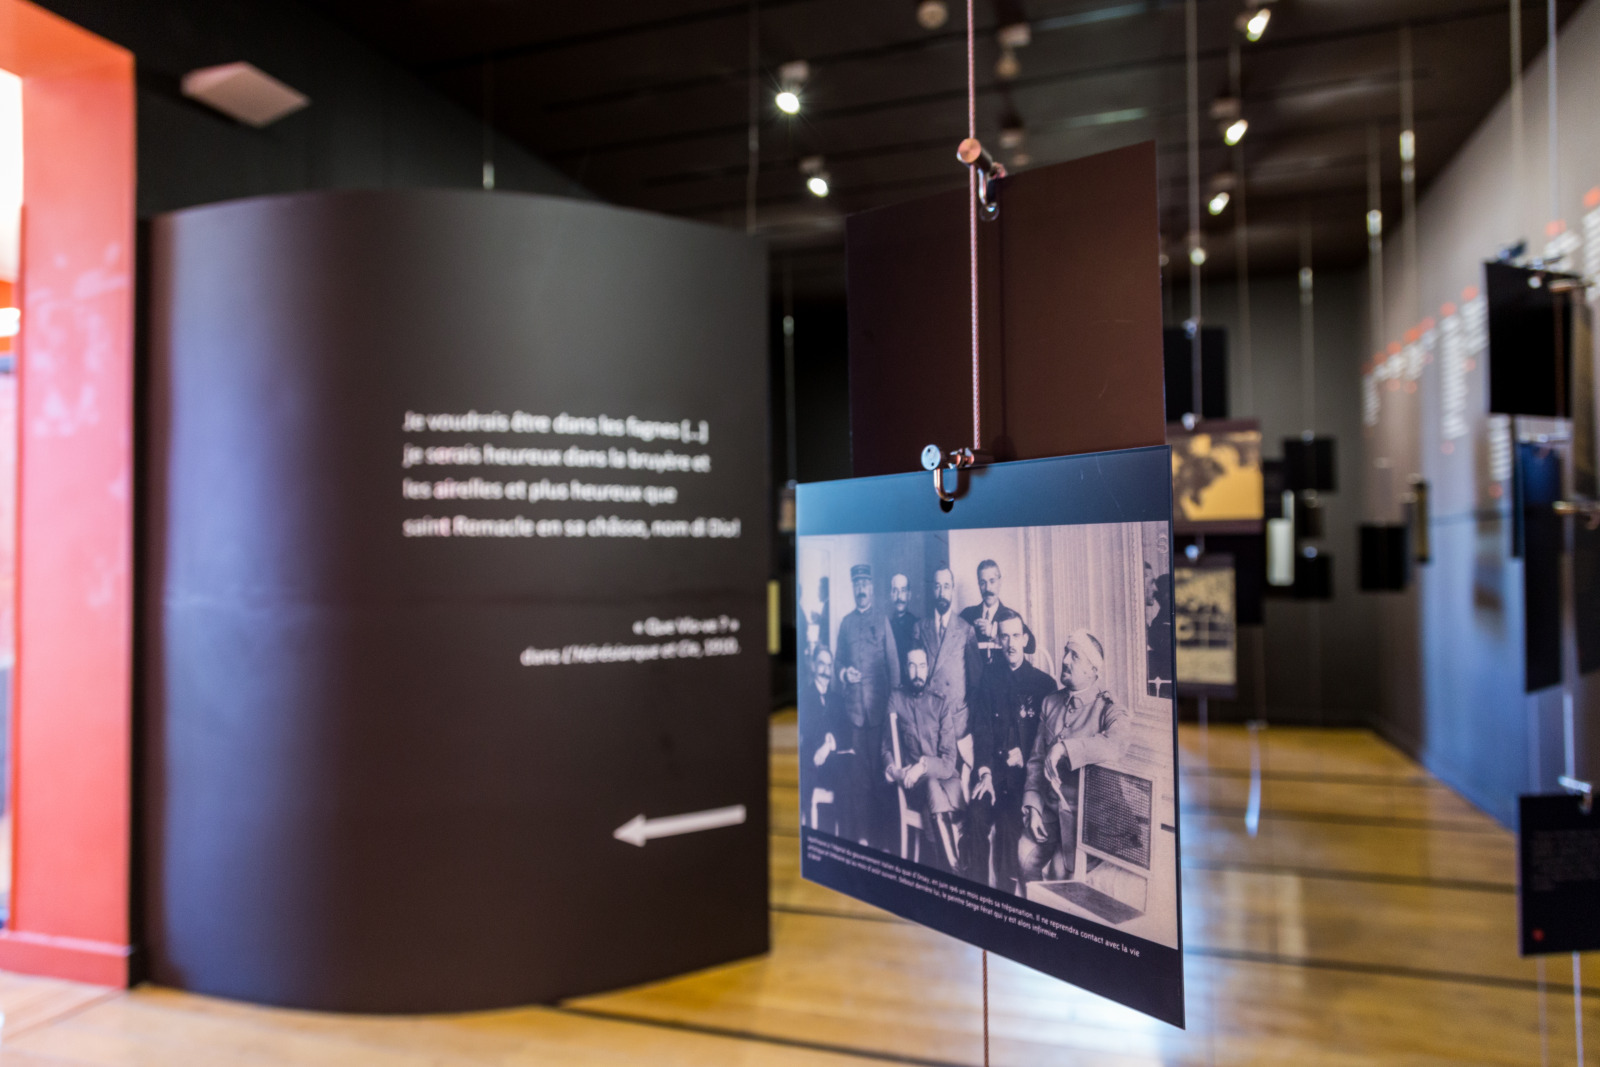 Salle d'exposition de photos et de textes de Guillaume Apollinaire